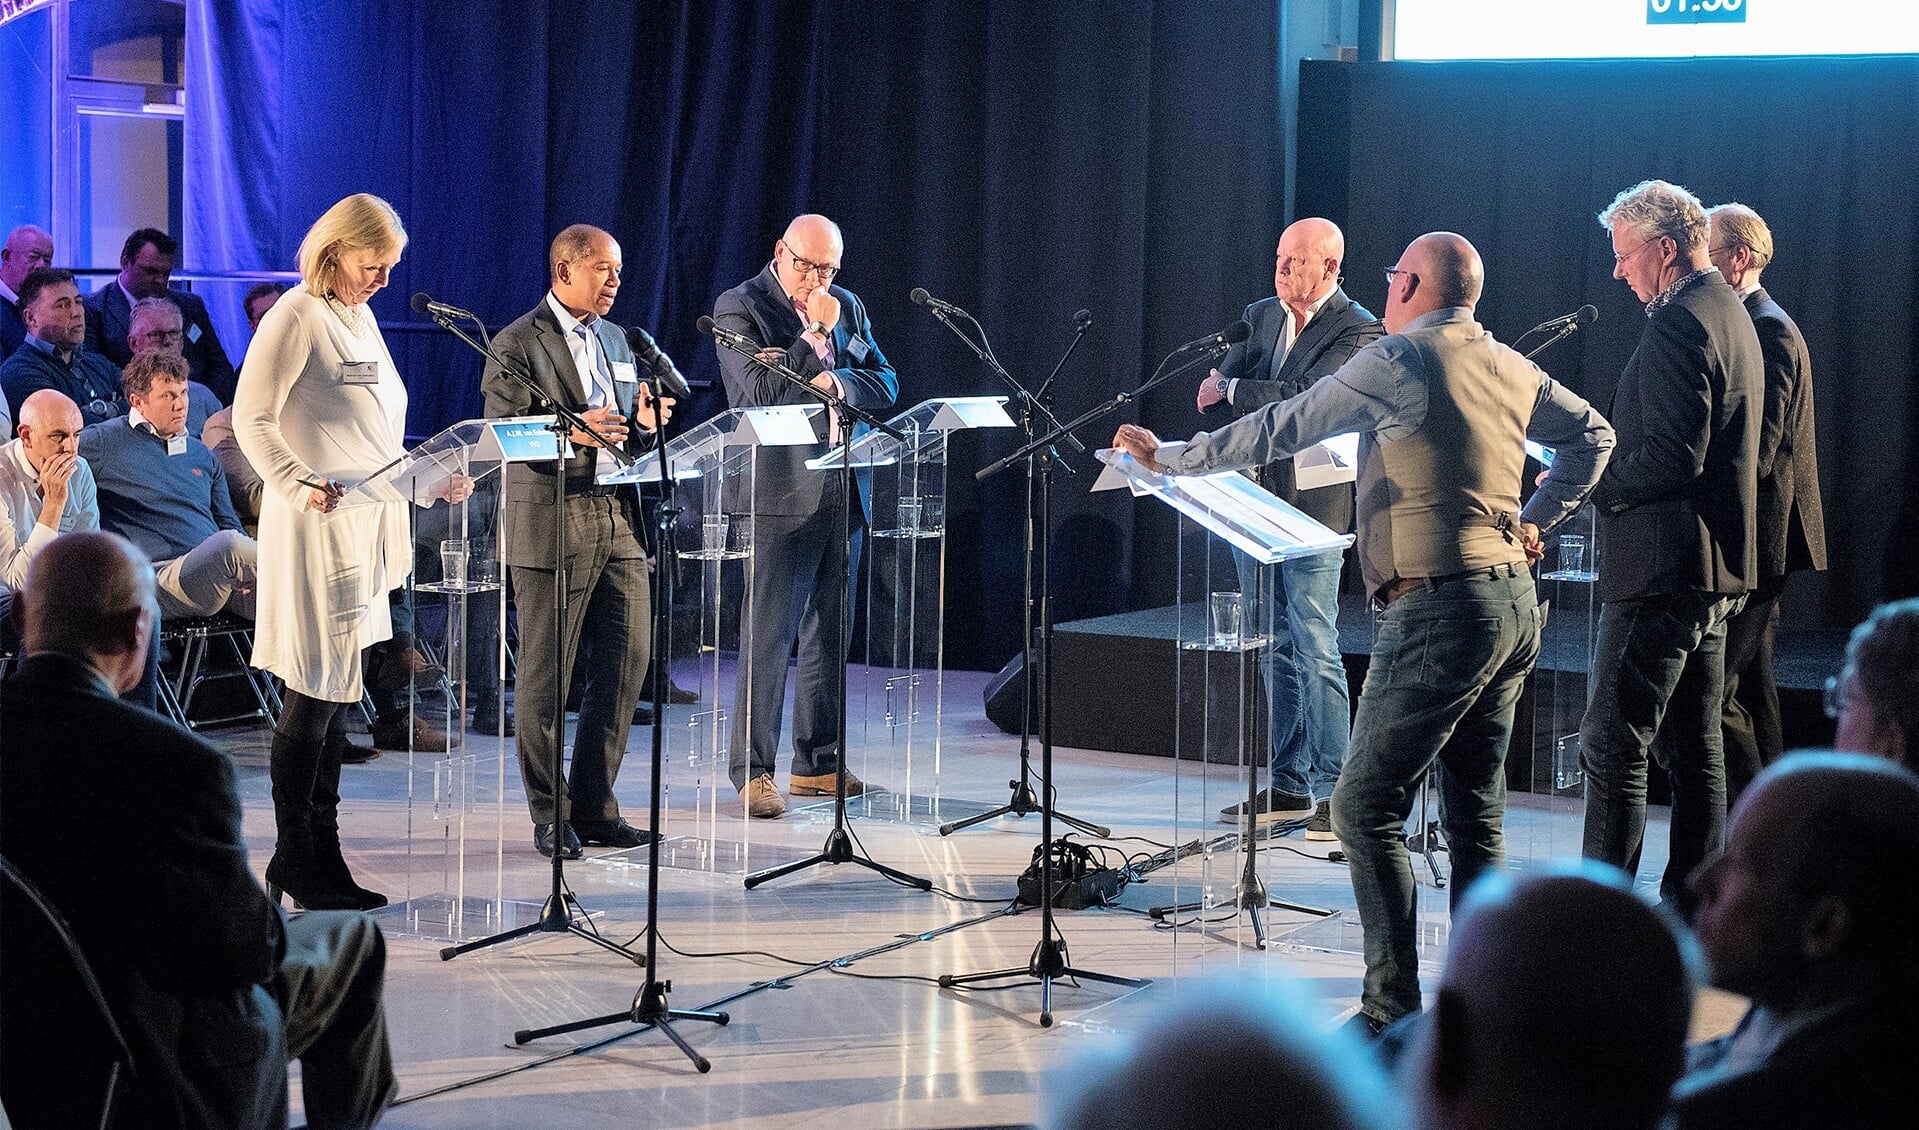 Het Politiek Sportcafé onder leiding van Frits Wester was het eerste debat in aanloop naar de gemeenteraadsverkiezingen van maart volgend jaar (tekst: Inge Koot; foto: Michel Groen).